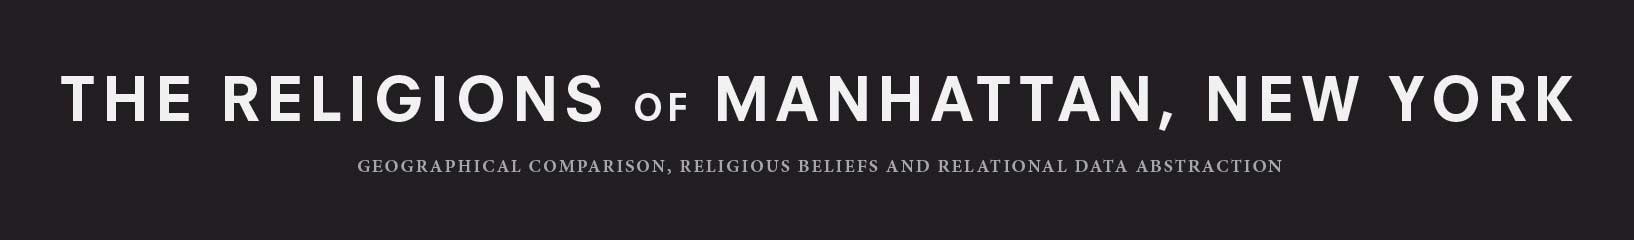 religions of manhattan